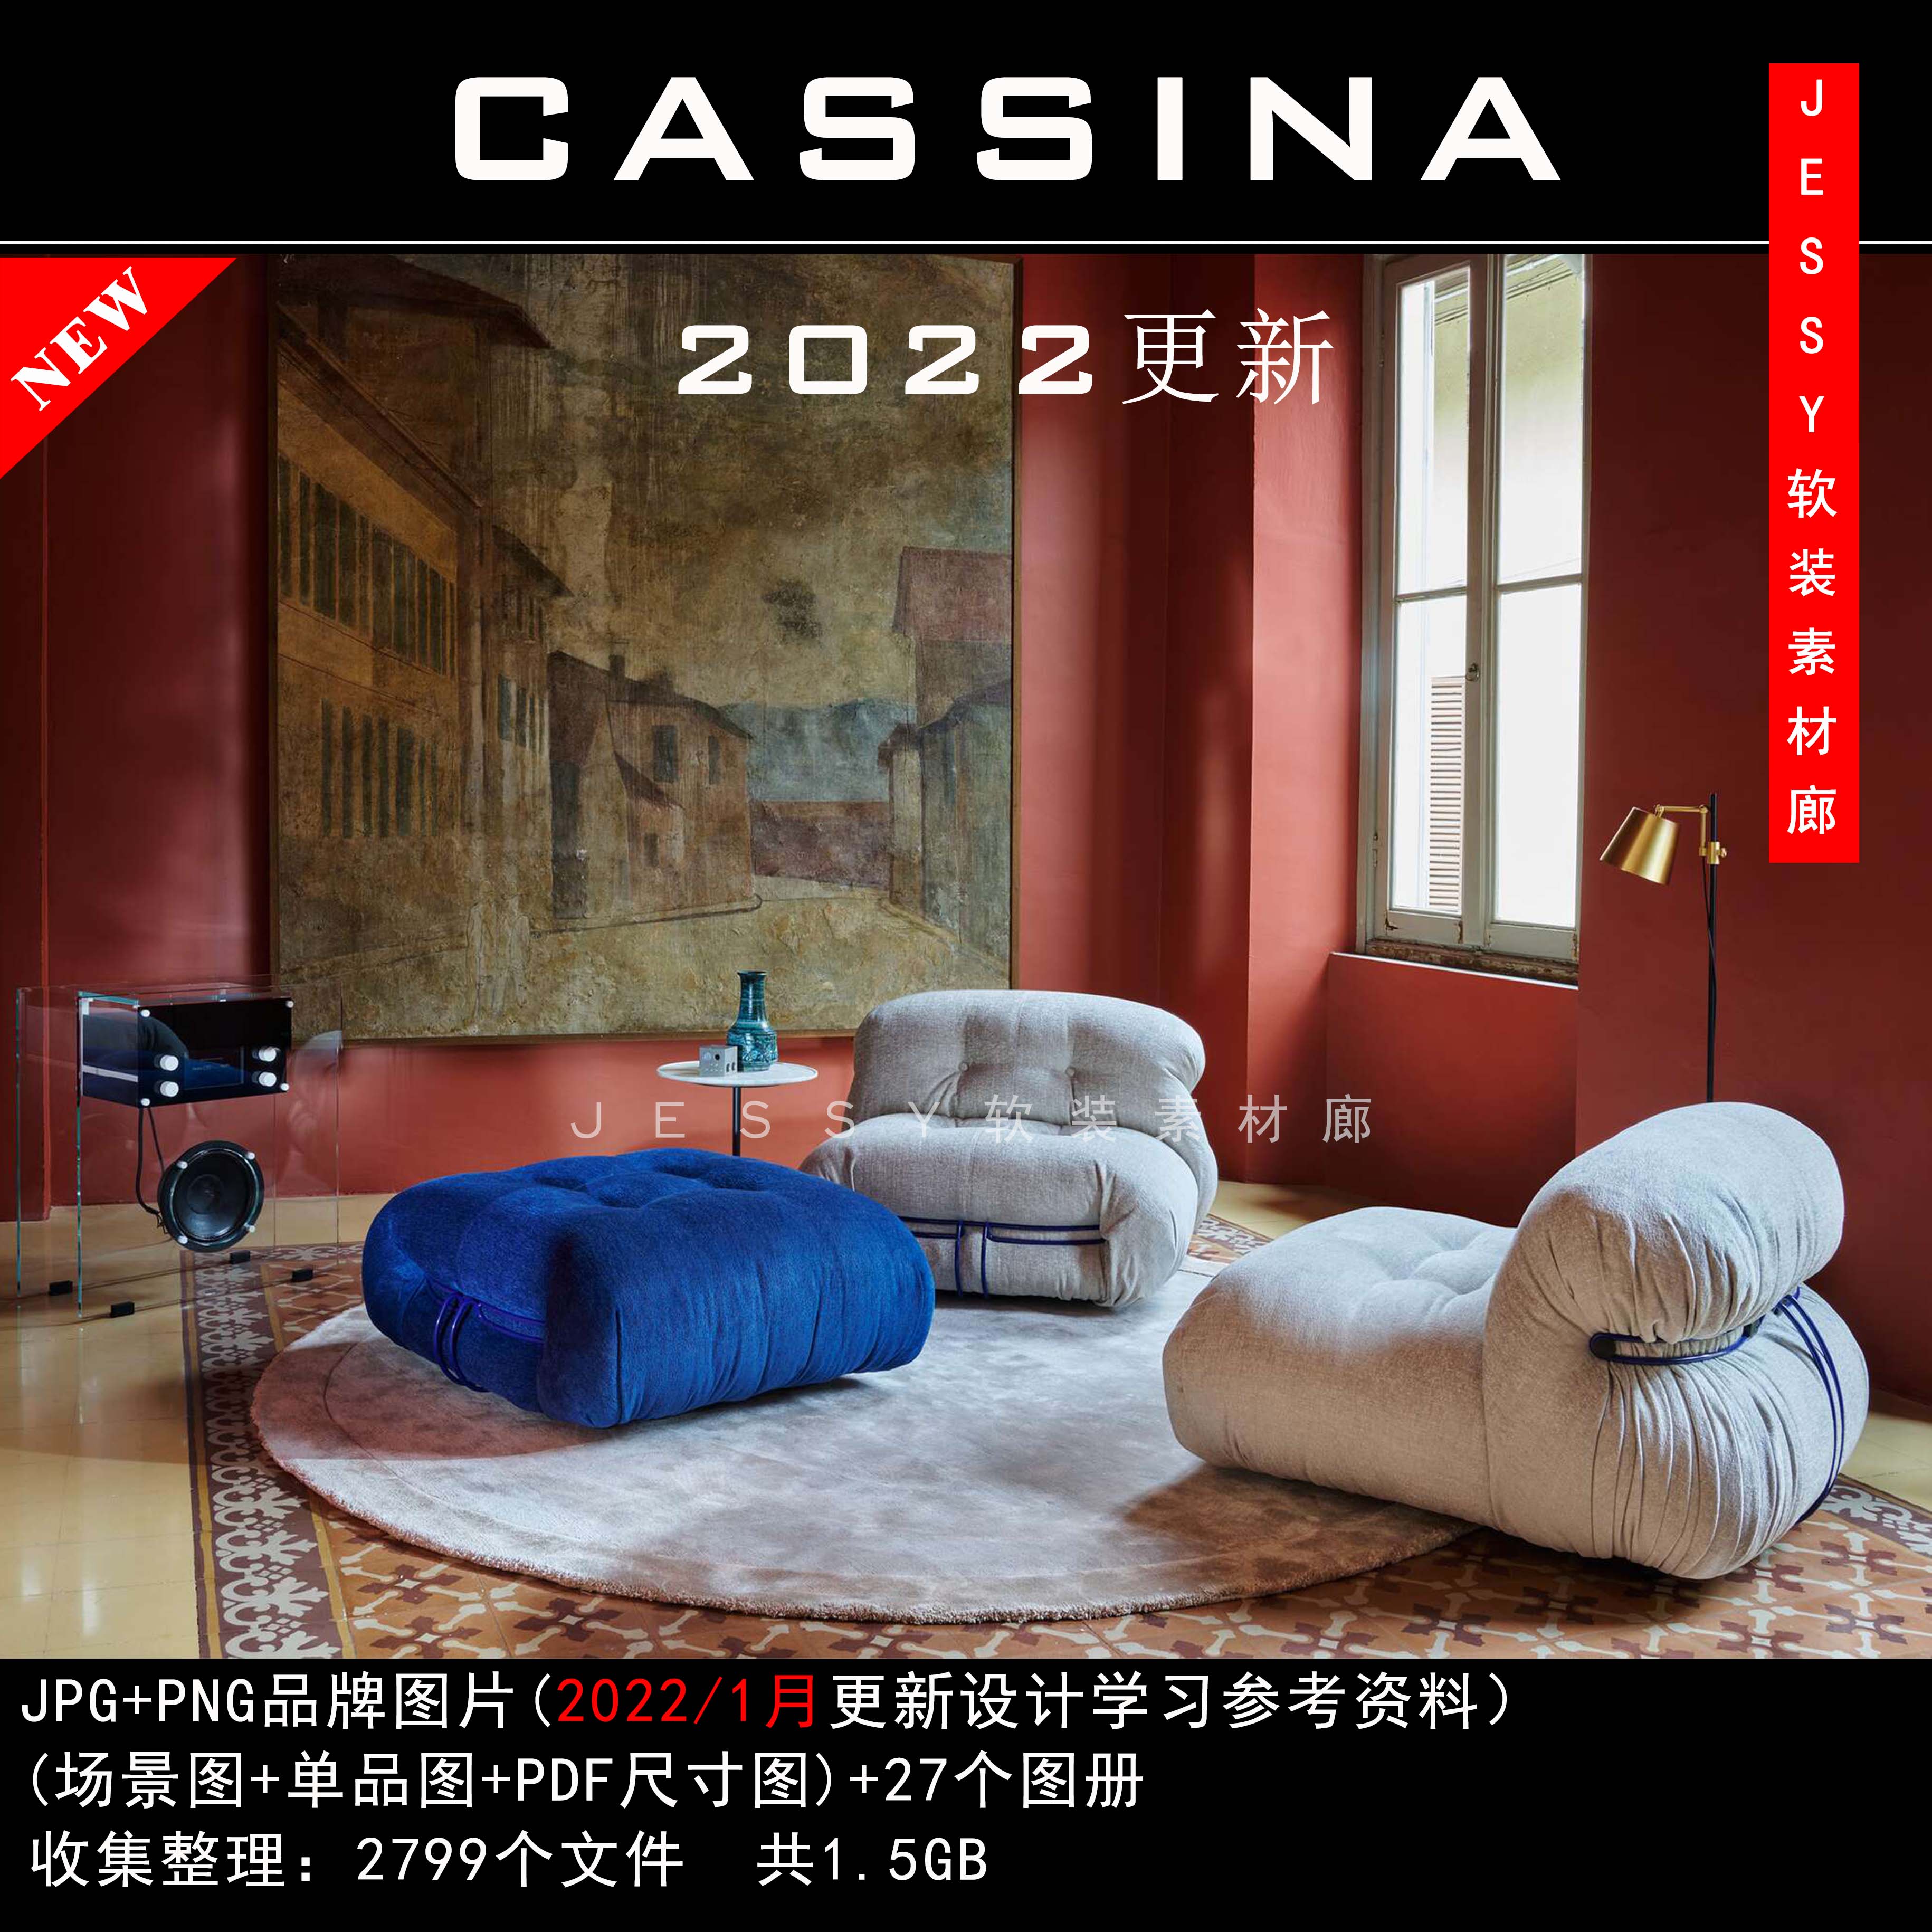 意大利卡西纳Cassina2021新品及以往素材软装参考图片带尺寸资料